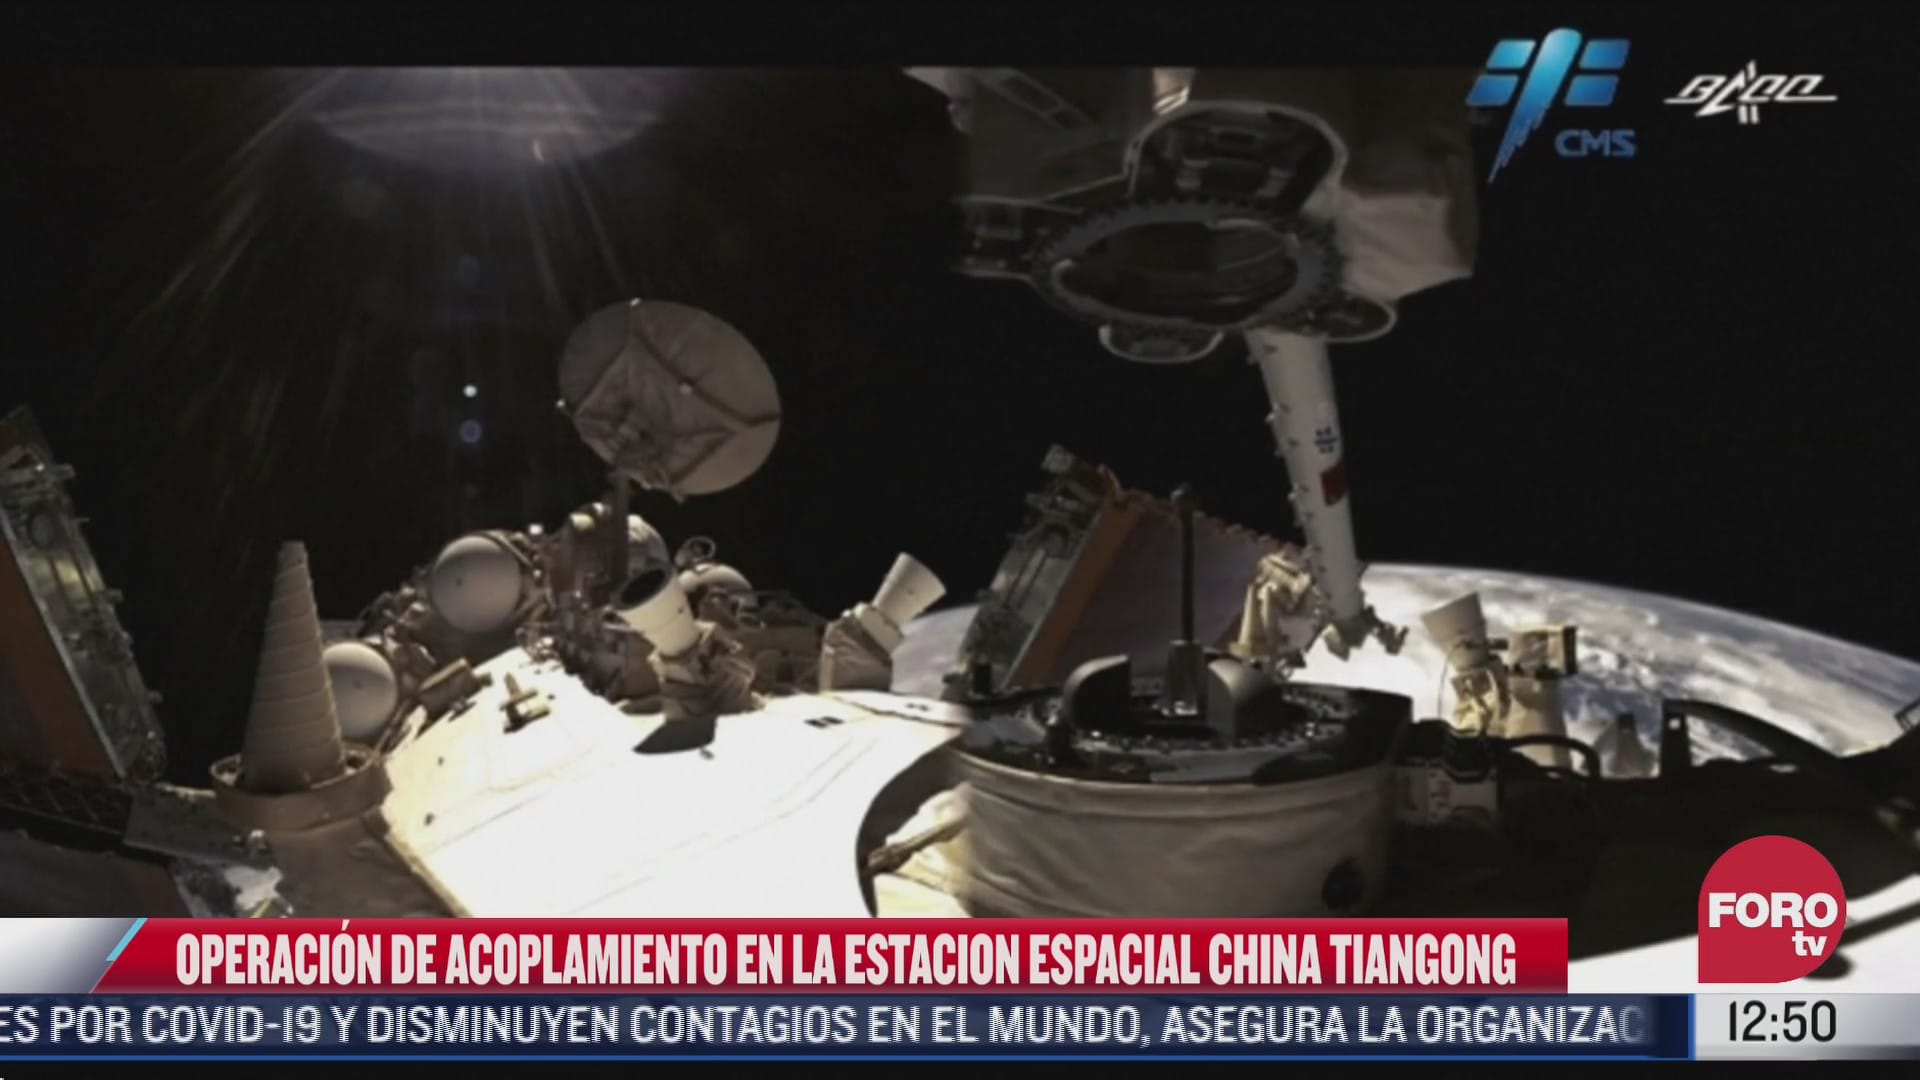 brazo mecanico de la estacion espacial tiangong realiza operacion de acoplamiento